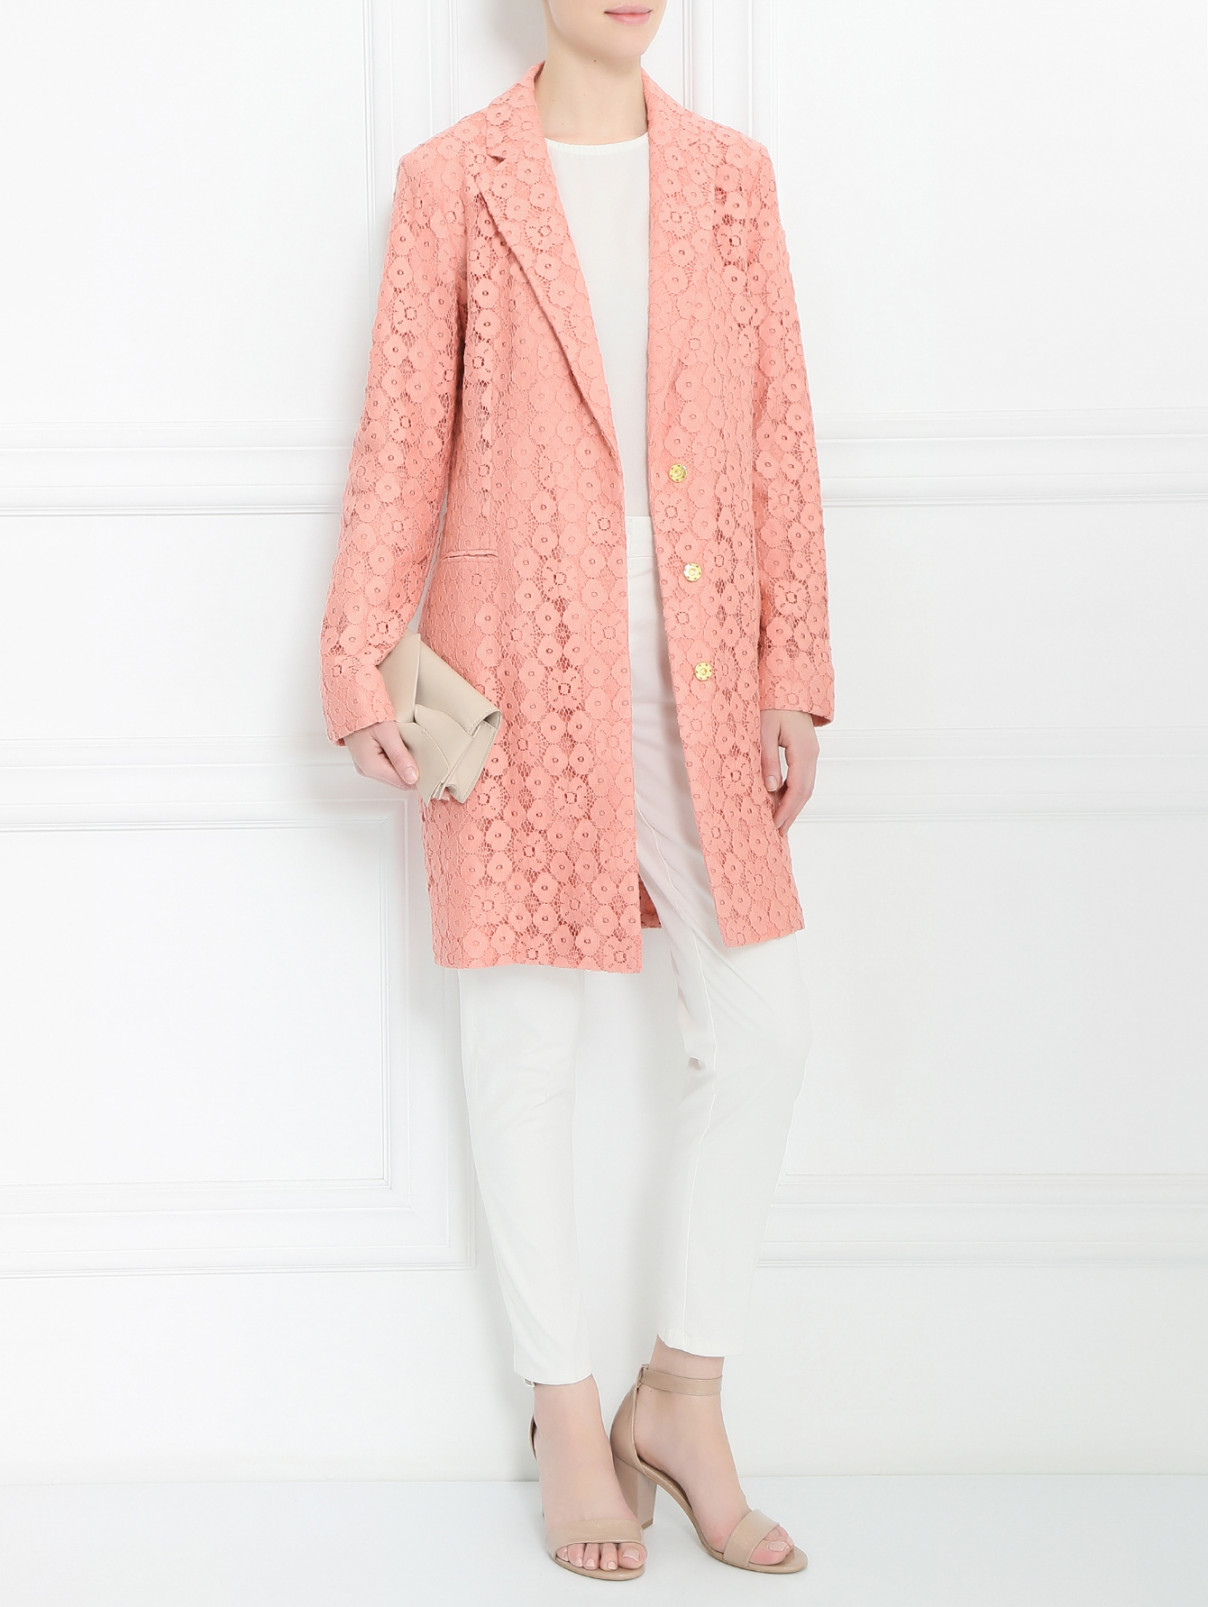 Легкое пальто из кружева Moschino Cheap&Chic  –  Модель Общий вид  – Цвет:  Розовый